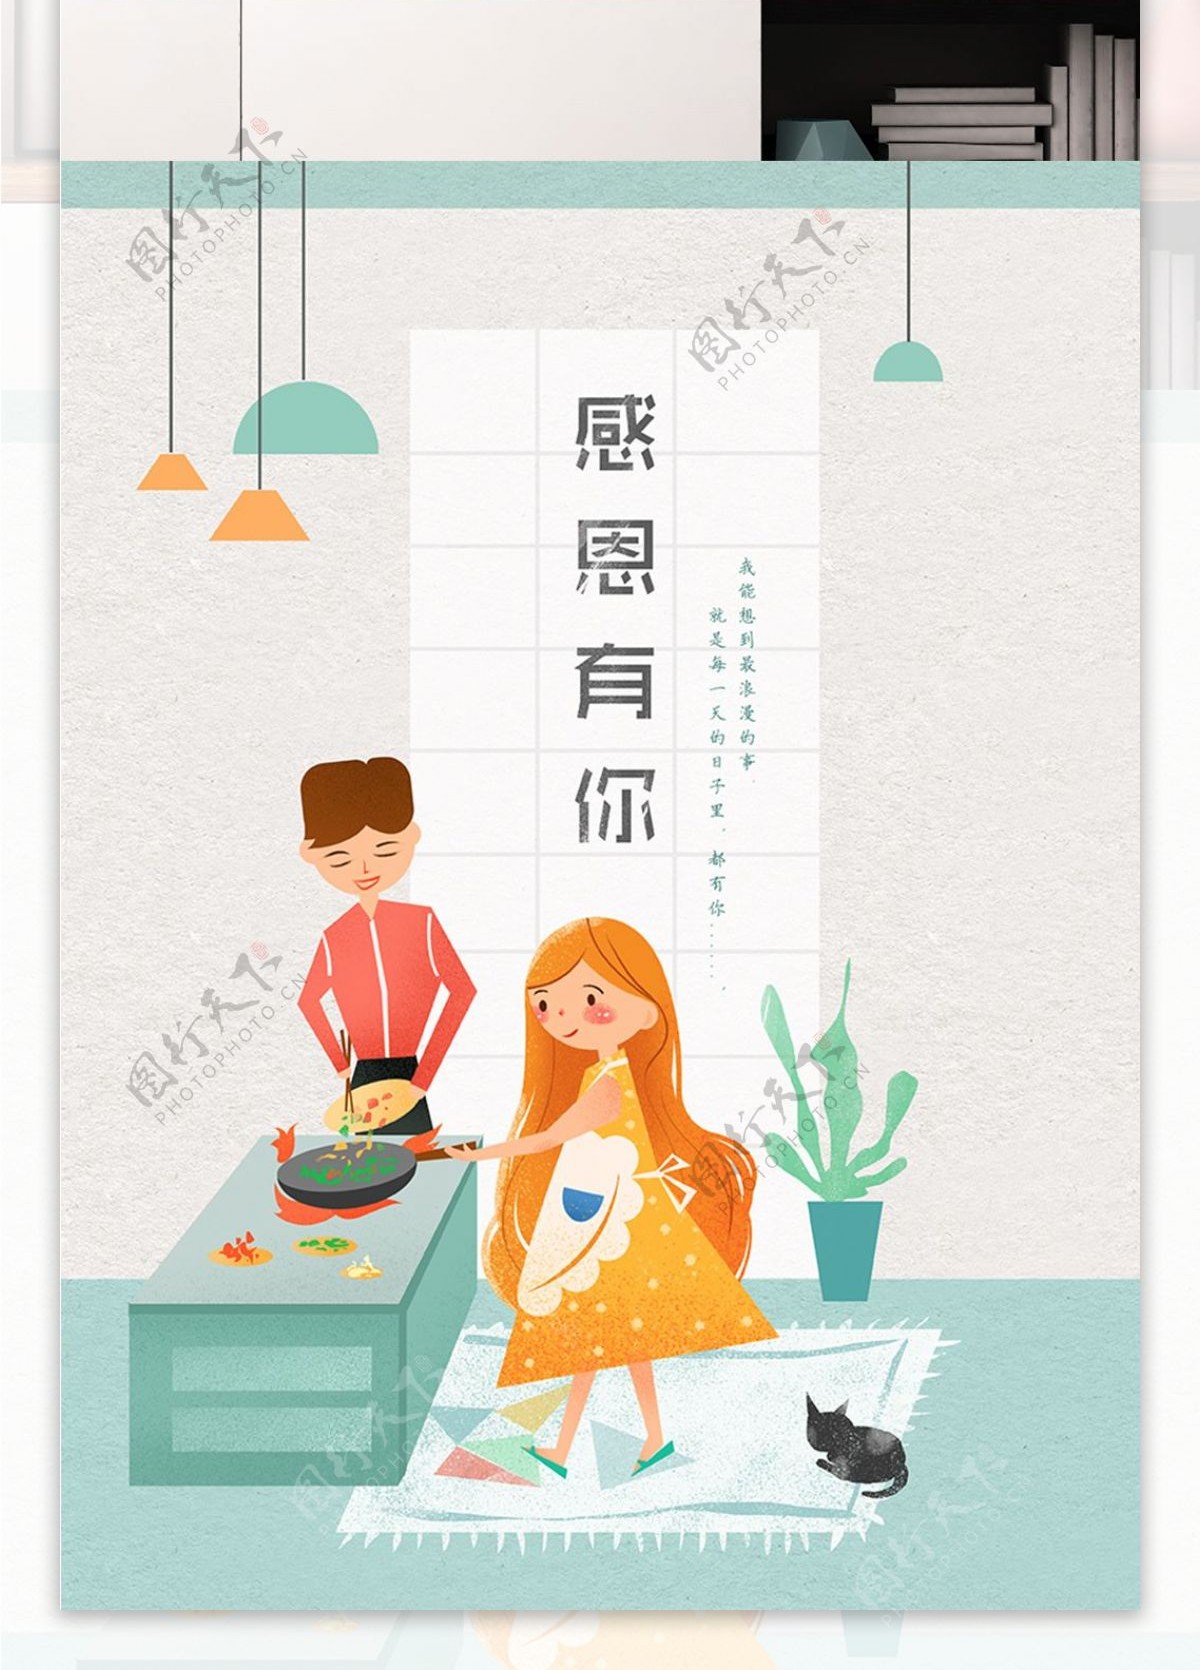 感恩节清新浪漫温暖情侣日常手绘插画海报